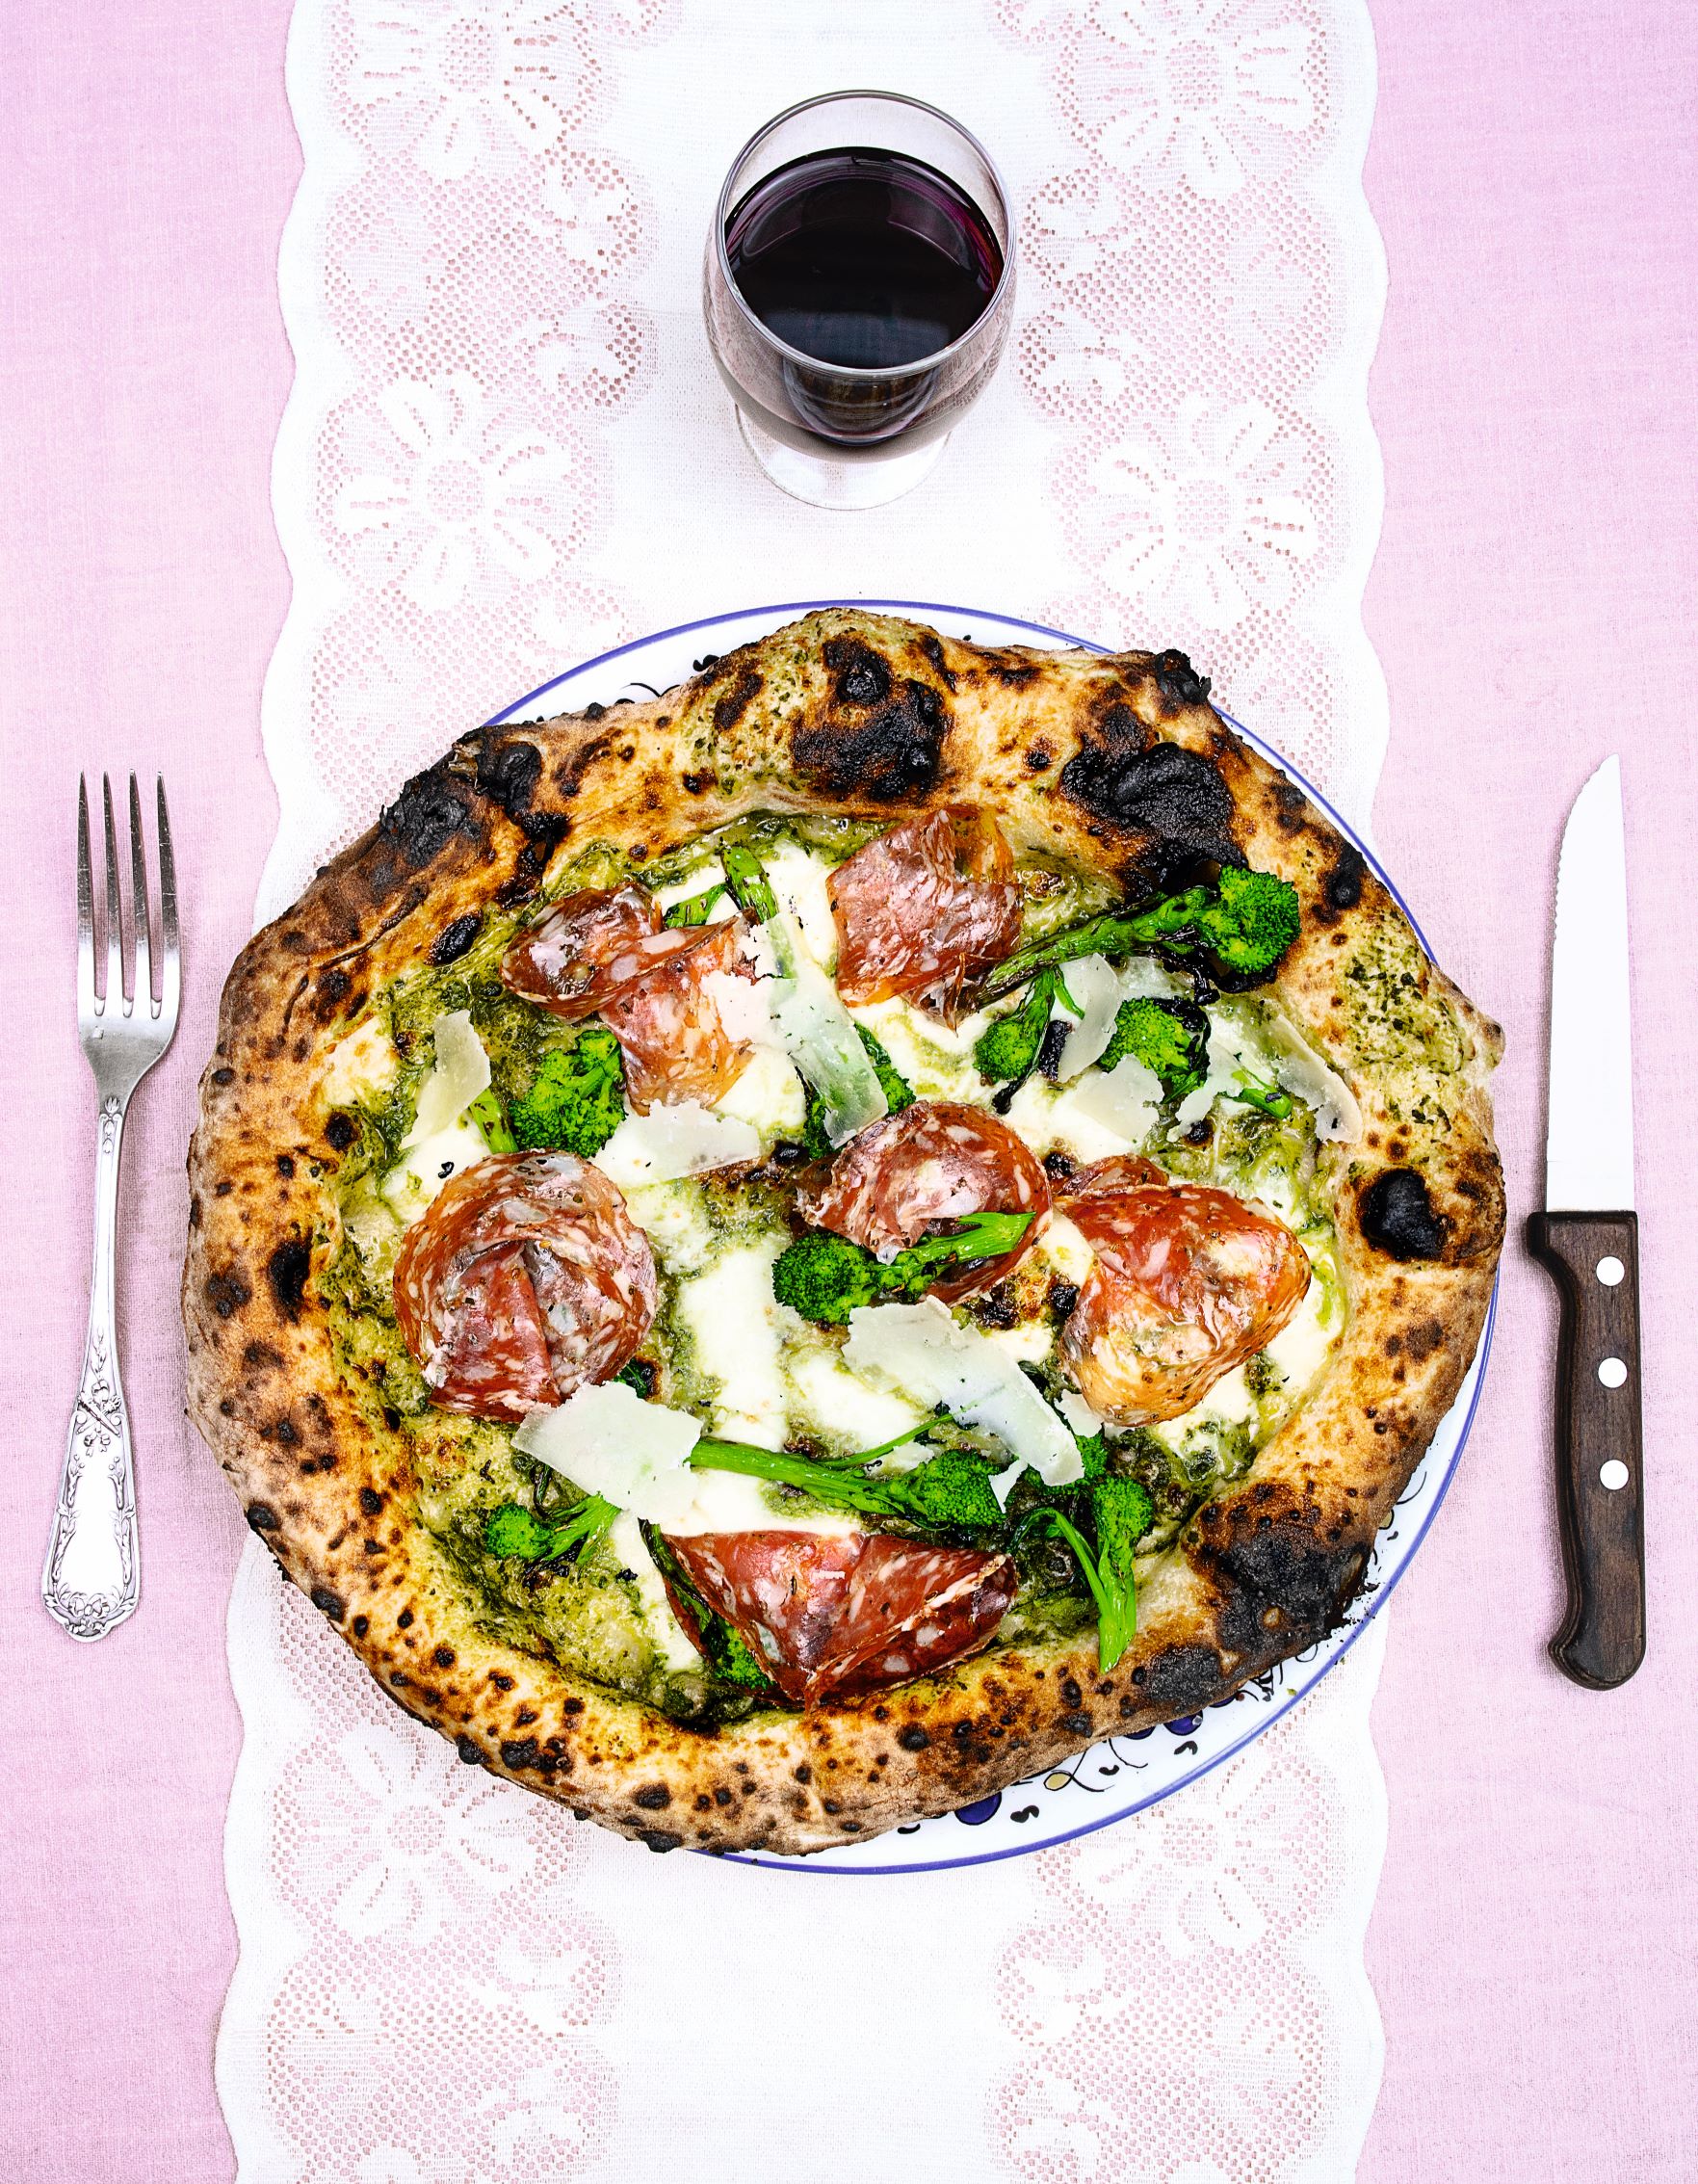 Green Pizz’ (Rapini (broccoli rabe) cream, finocchiona, mozzarella and pecorino pizza)